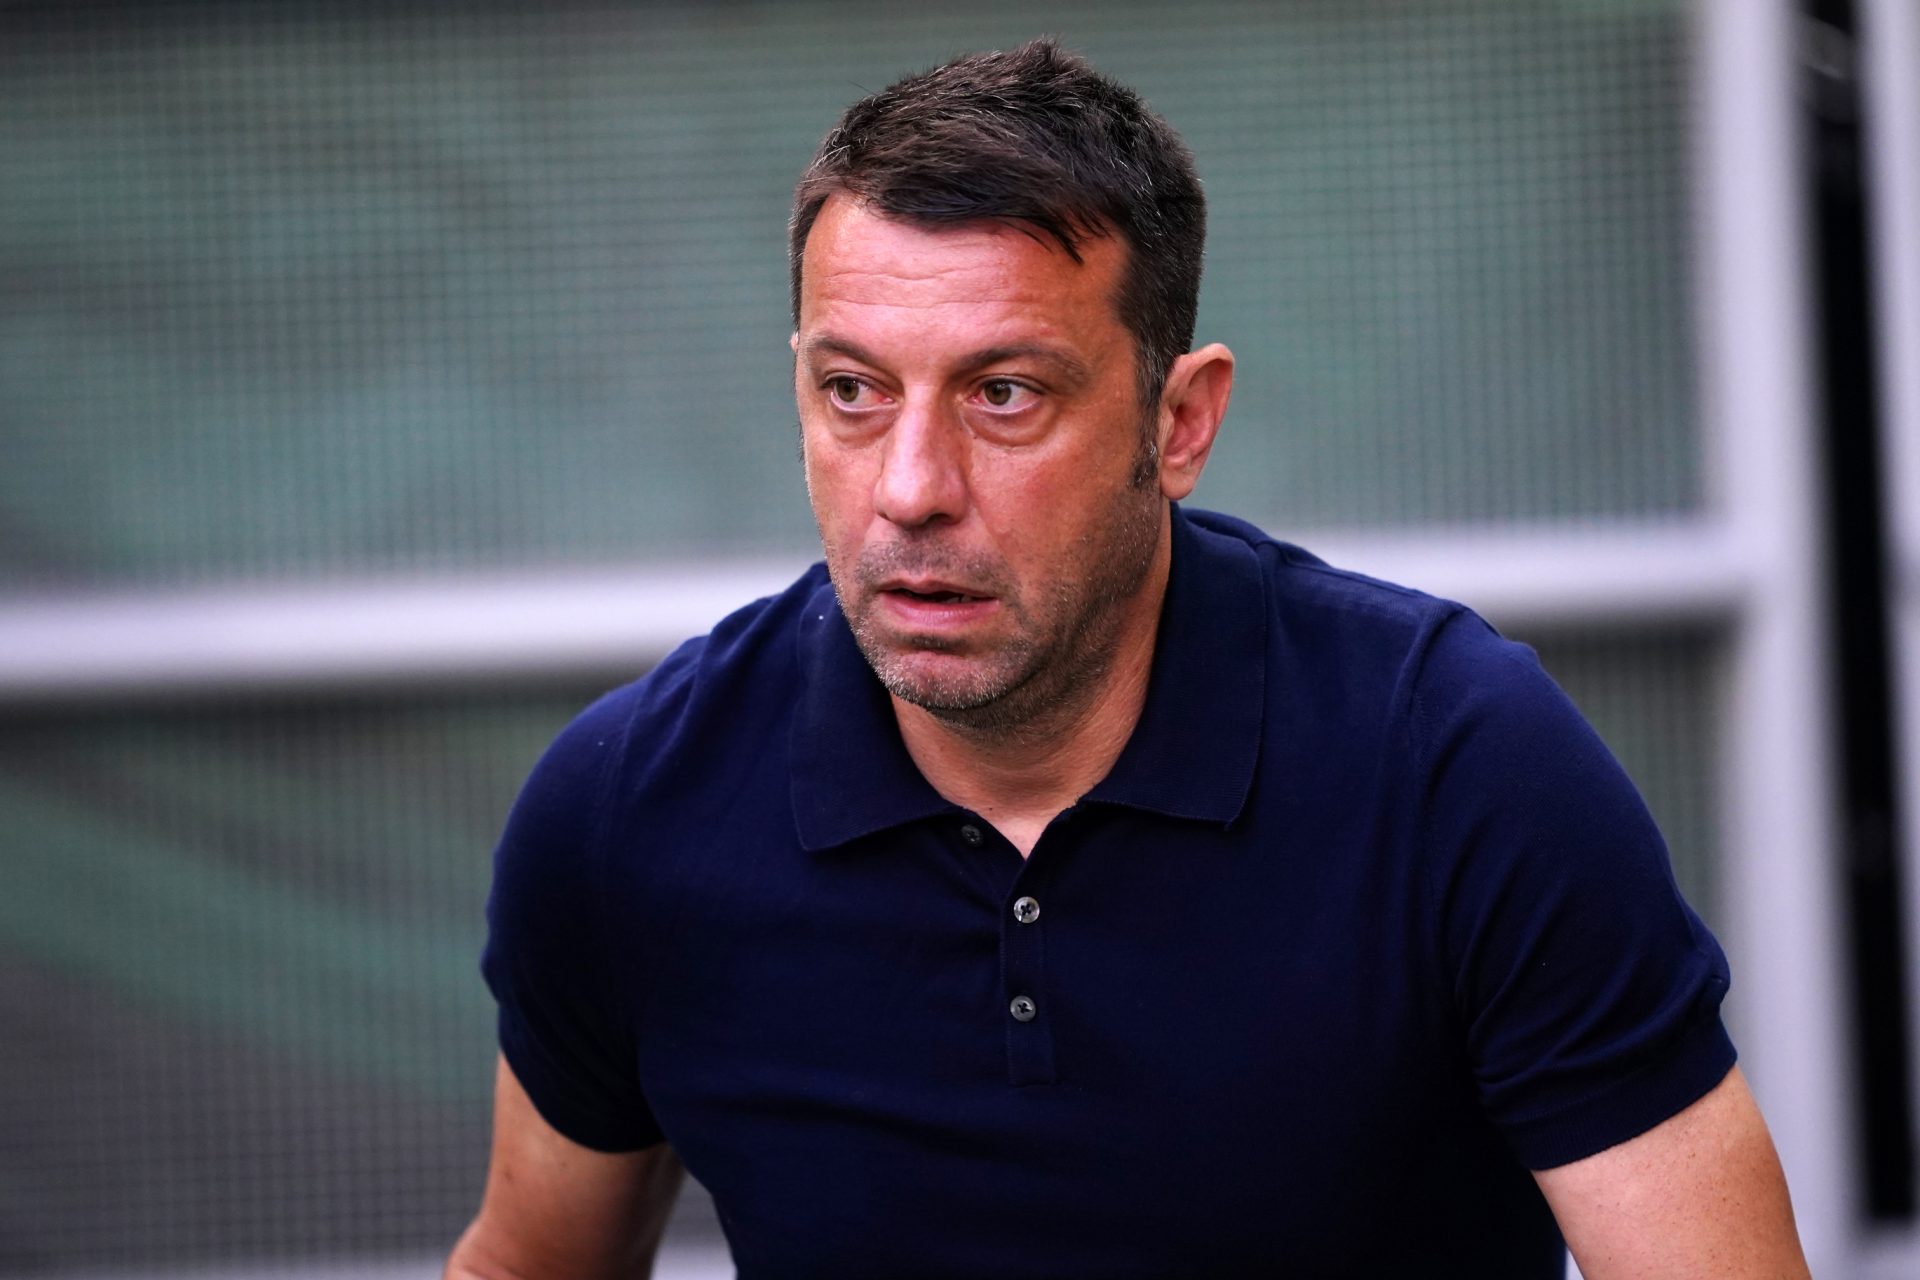 Treinador do Lecce despedido depois de cabeçada a adversário